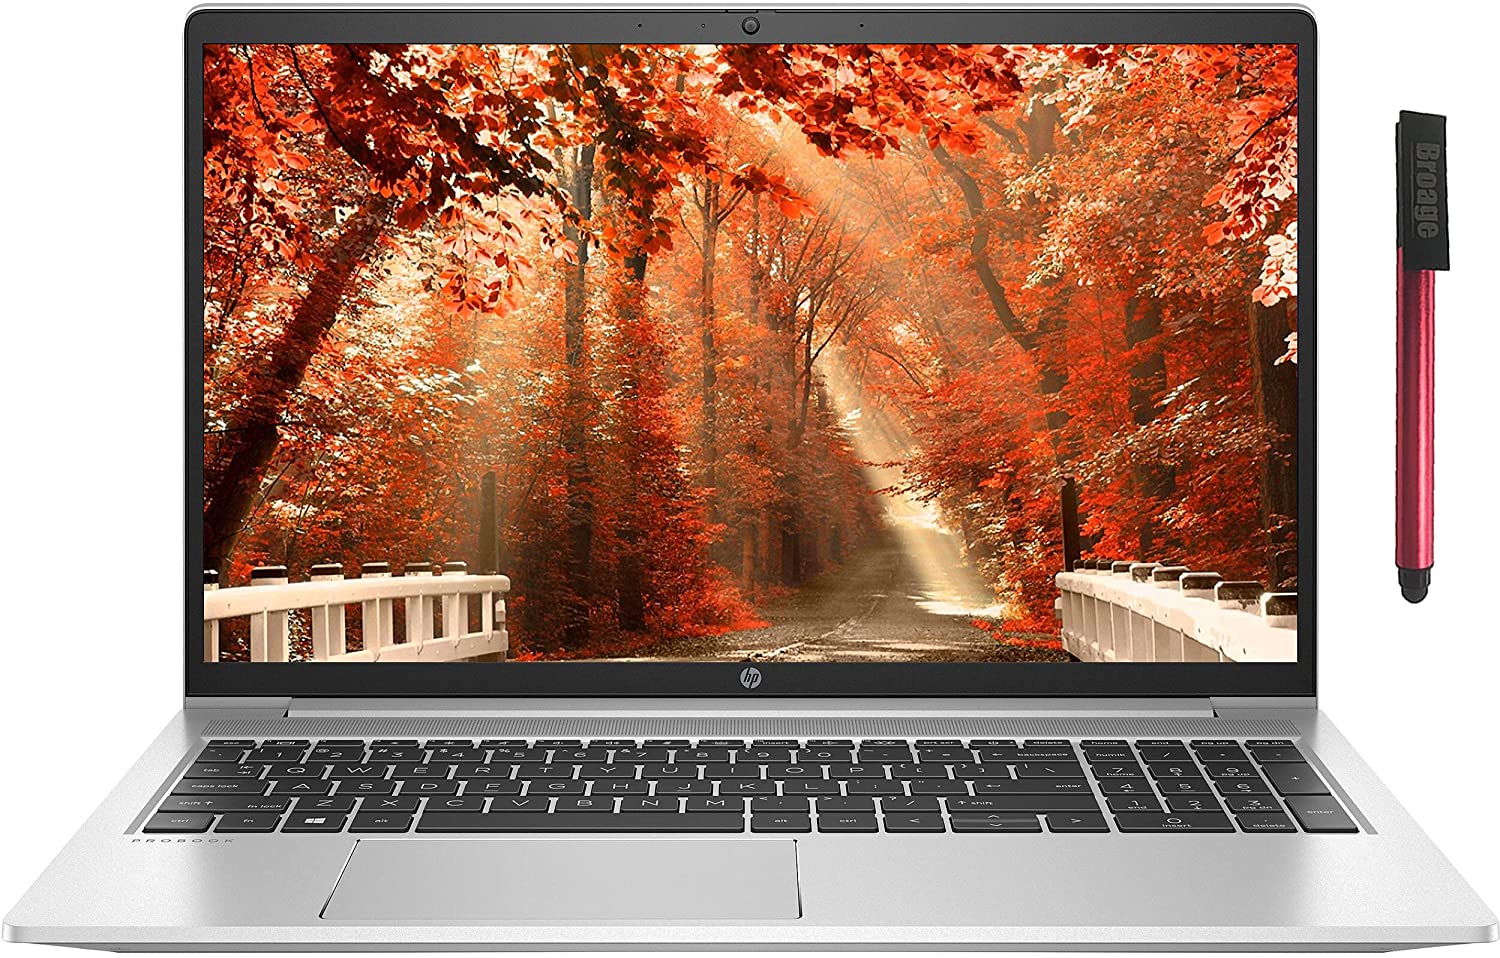  Buy HP 2021 ProBook 450 G8 15.6 IPS FHD 1080p Business